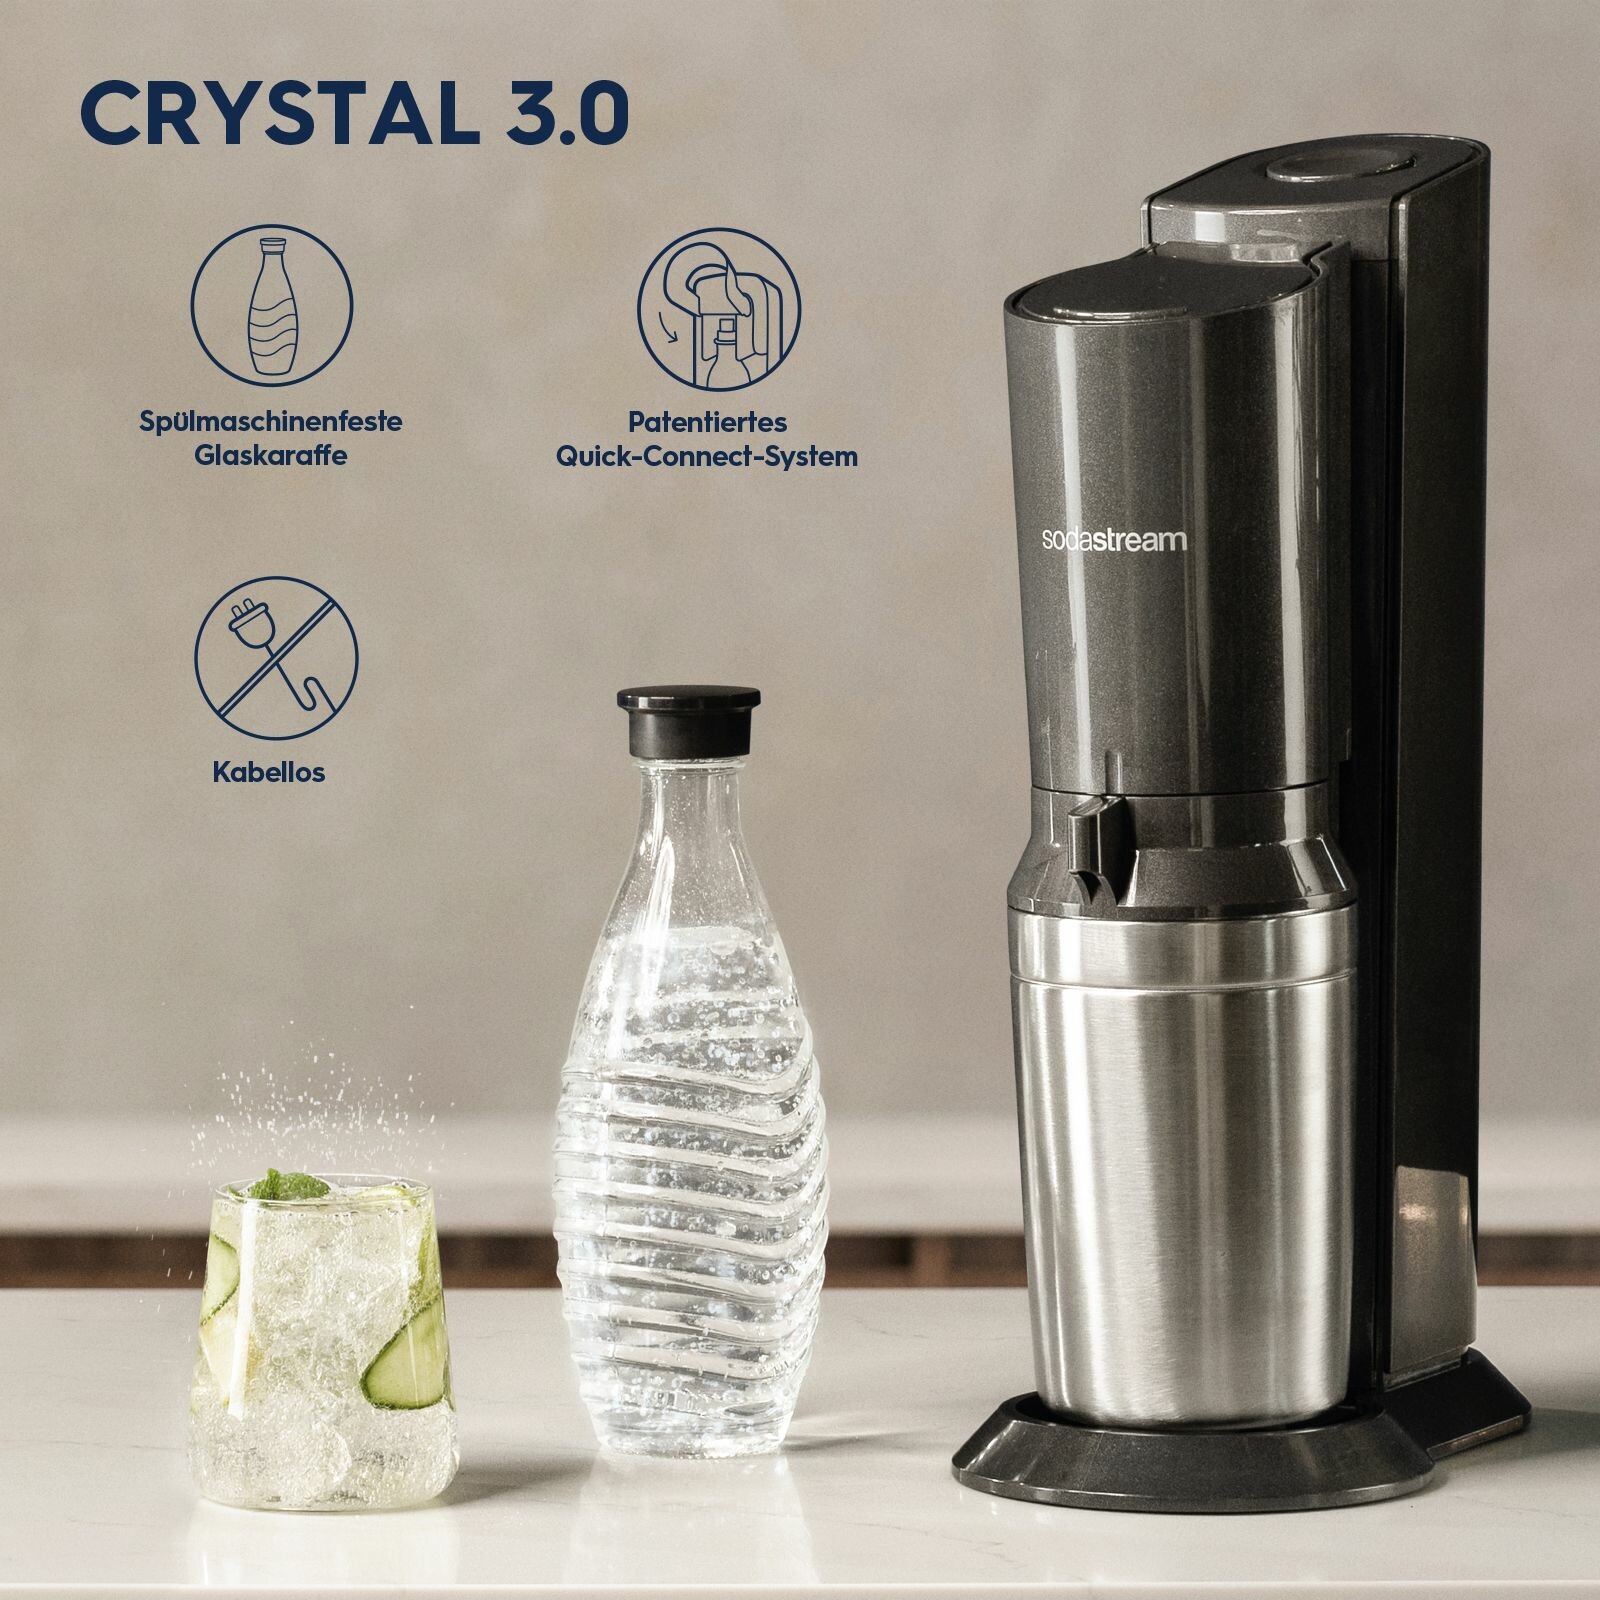 Sodastream : Machines > Crystal 3.0 > SodaStream Crystal 3.0 noir